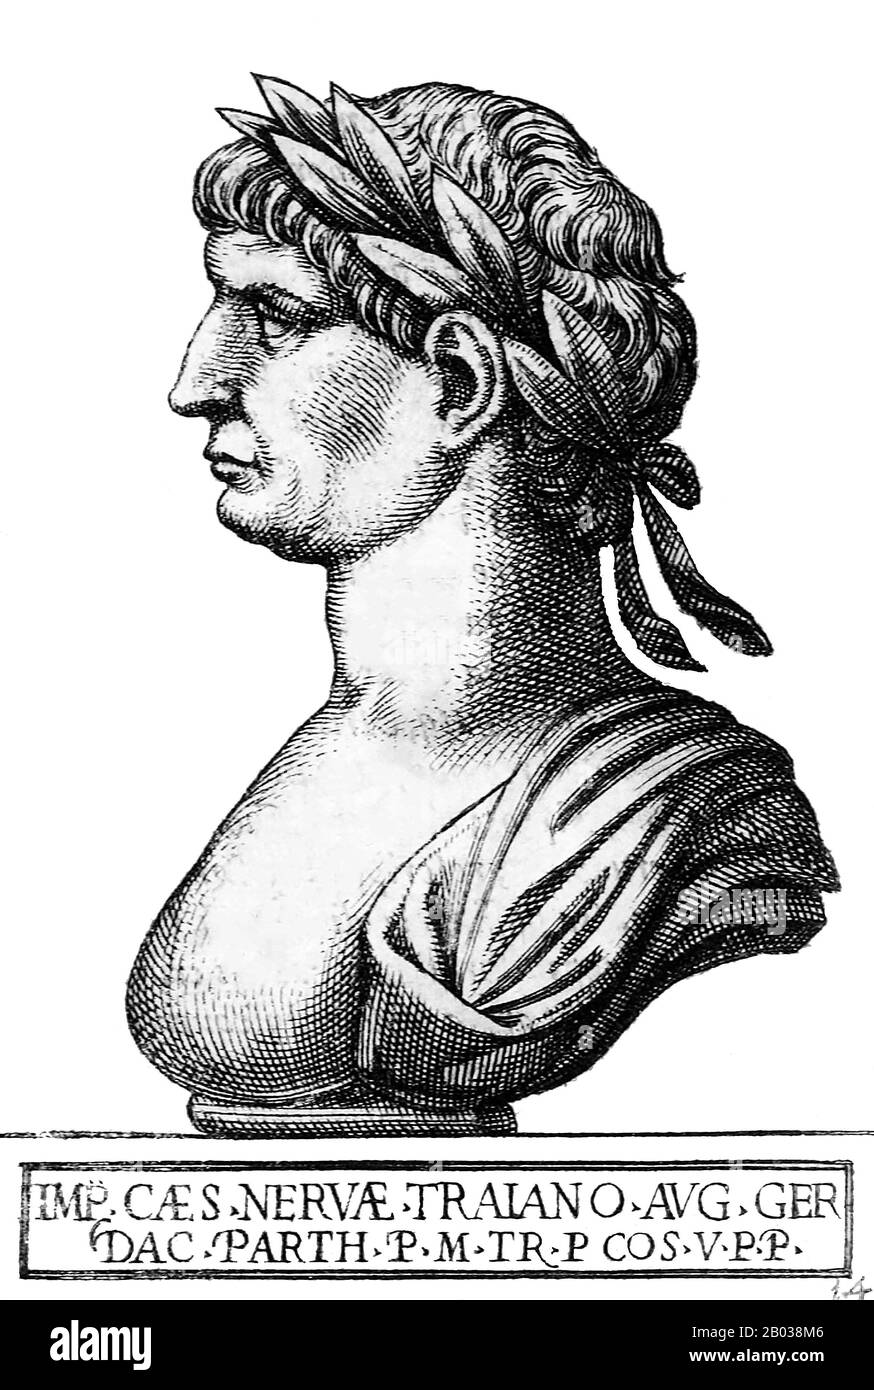 Marcus Ulpius Traianus (53-117), più noto come Traiano, è nato nella provincia di Hispania Baetica nel 53 d.C., in una famiglia non patrizia. Si alzò in risalto durante il regno di Domiziano, e combatté in numerose campagne. Fu adottato come erede e successore di Nerva nel 97 d.C., l'imperatore lo costrinse dalla Guardia Pretoriana. Traiano divenne imperatore nel 98 dopo la morte del suo predecessore. Traiano è considerato uno dei più grandi imperatori dell'Impero Romano, con il senato che lo dichiara ufficialmente 'optimus princeps', o 'miglior governante'. Fu un soldato-imperatore di grande successo che guidò Foto Stock